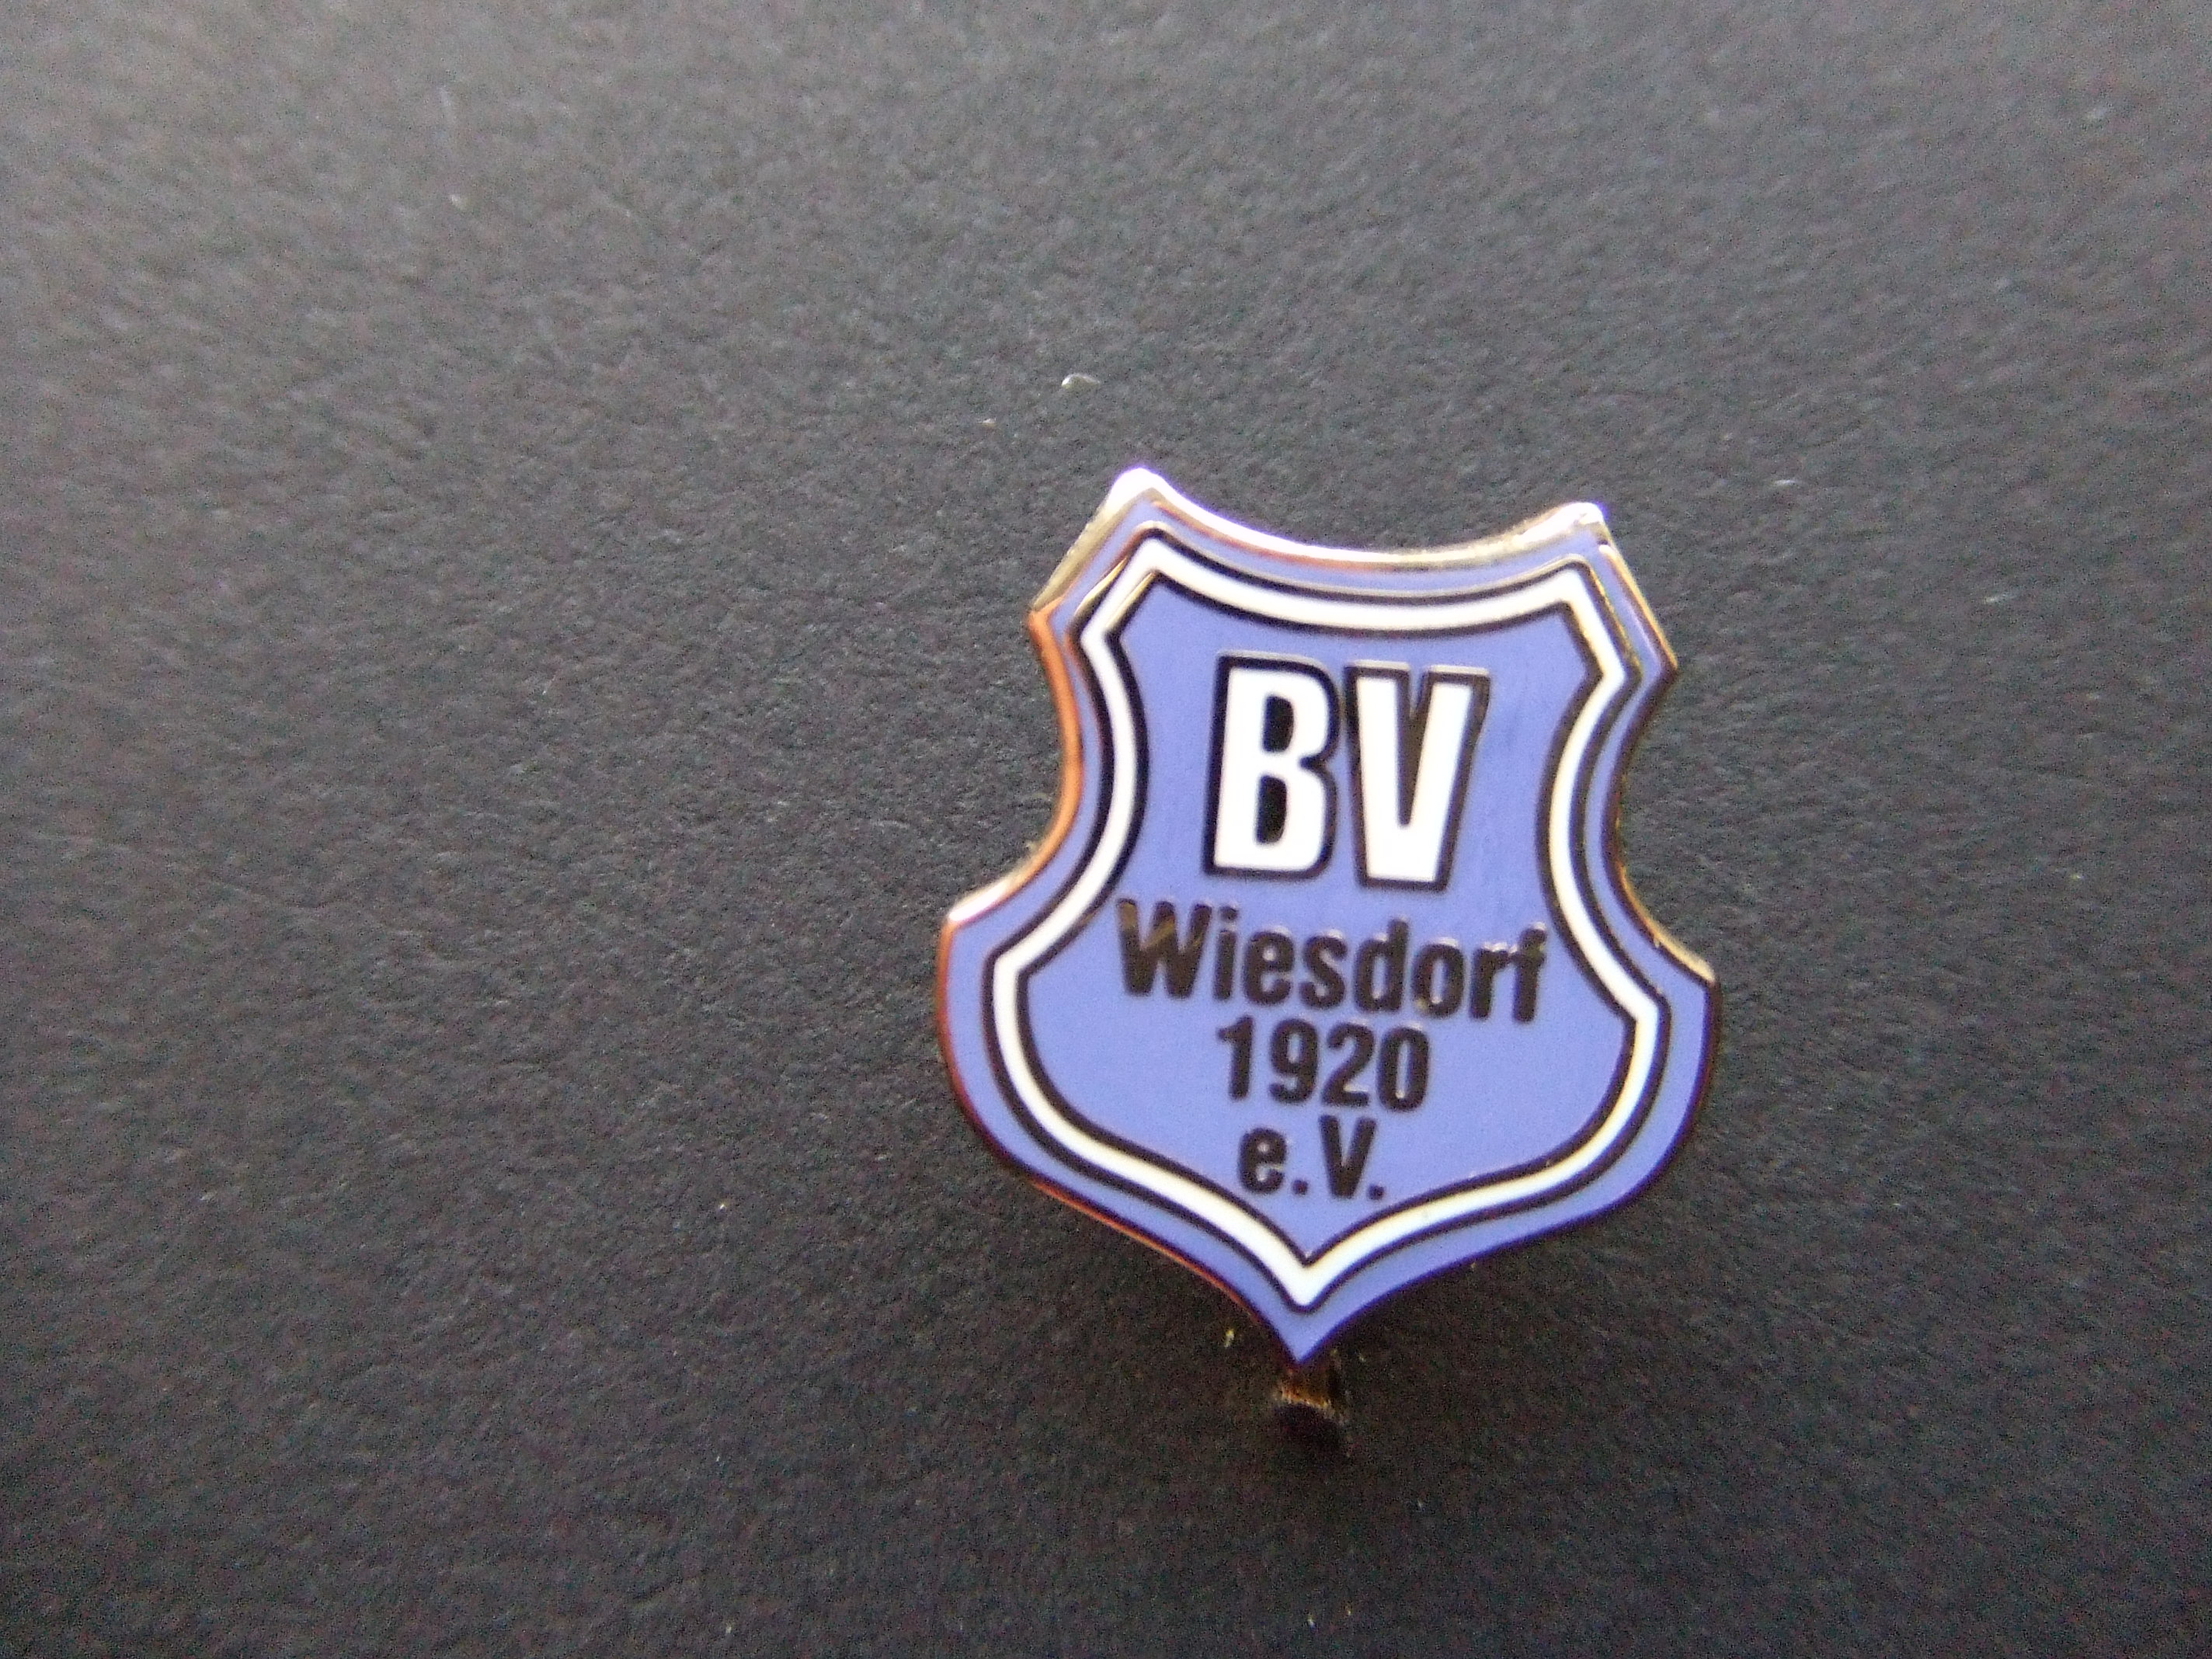 BV Wiesdorf 1920 voetbalclub duitsland